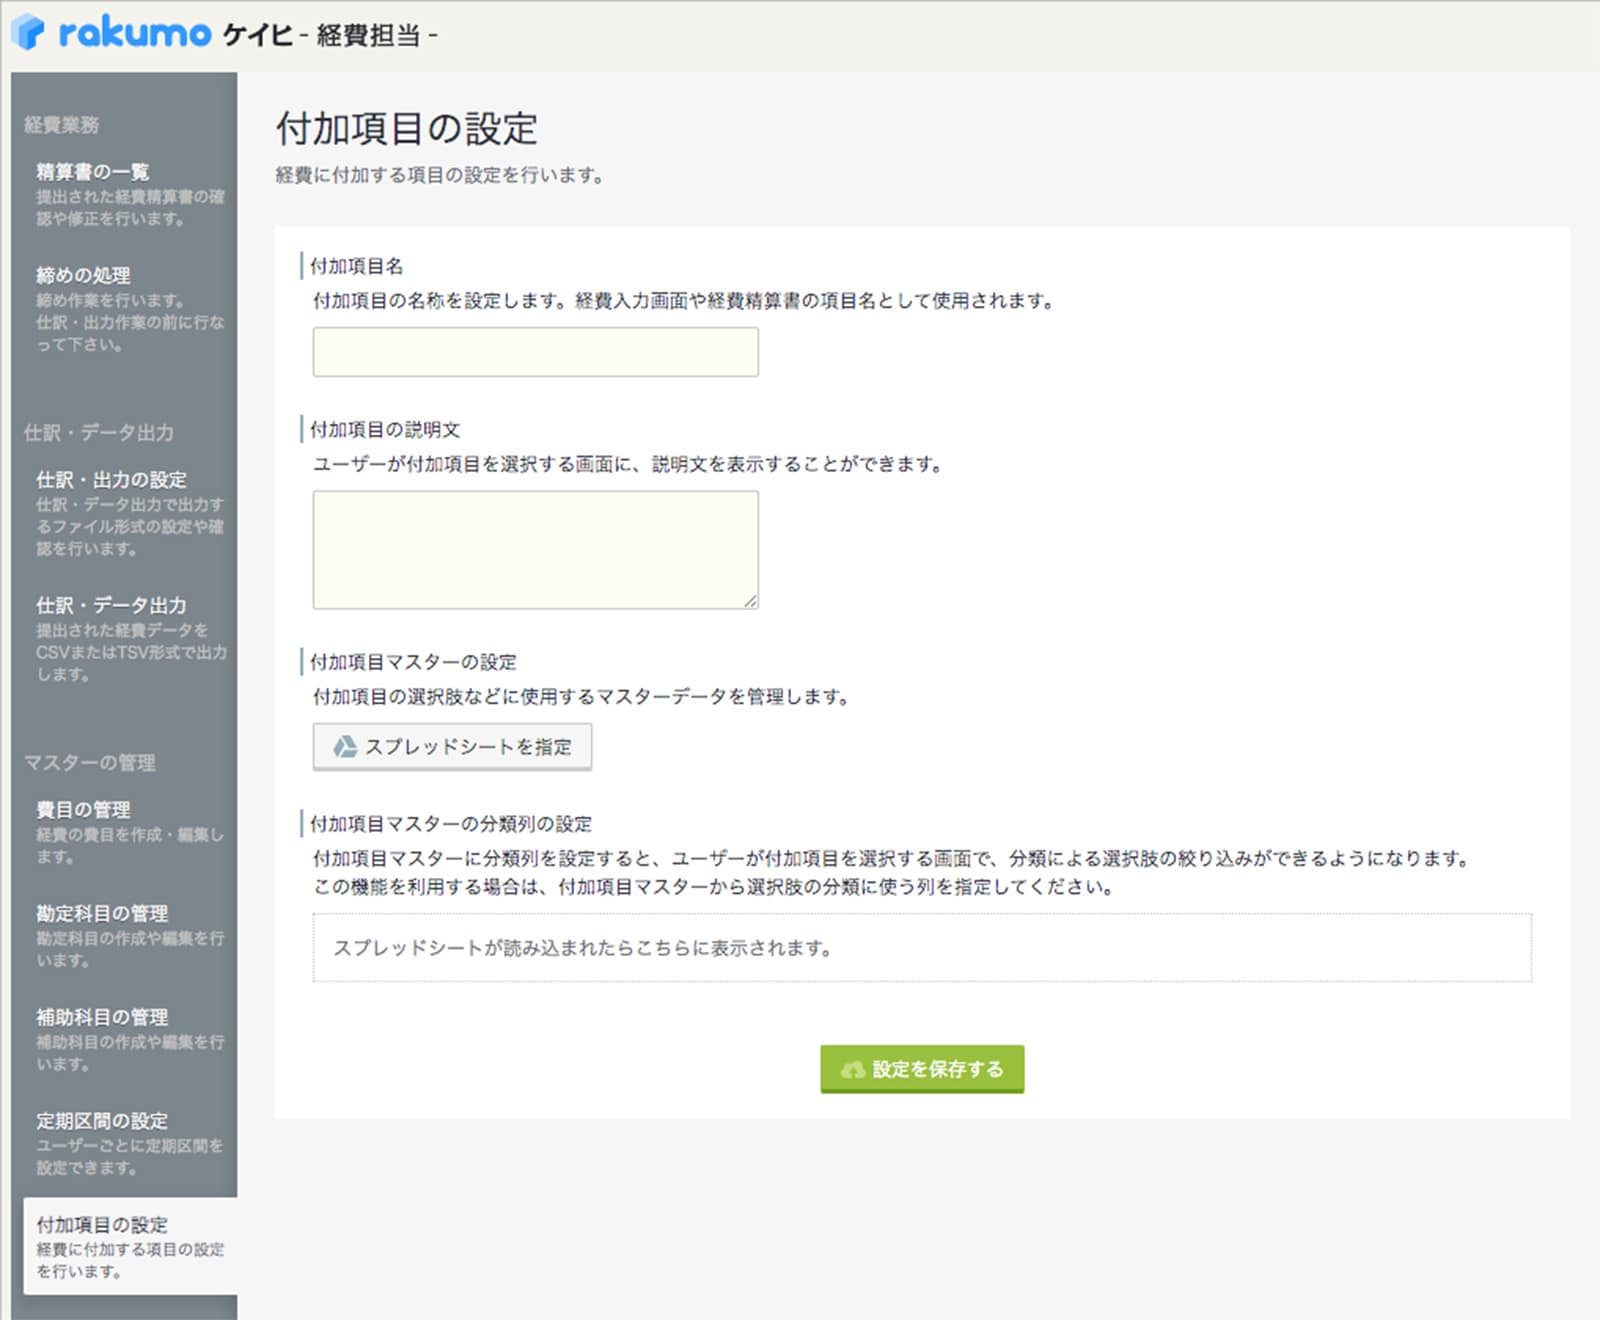 rakumo ケイヒ 設定画面。マスターデータはスプレッドシートで管理